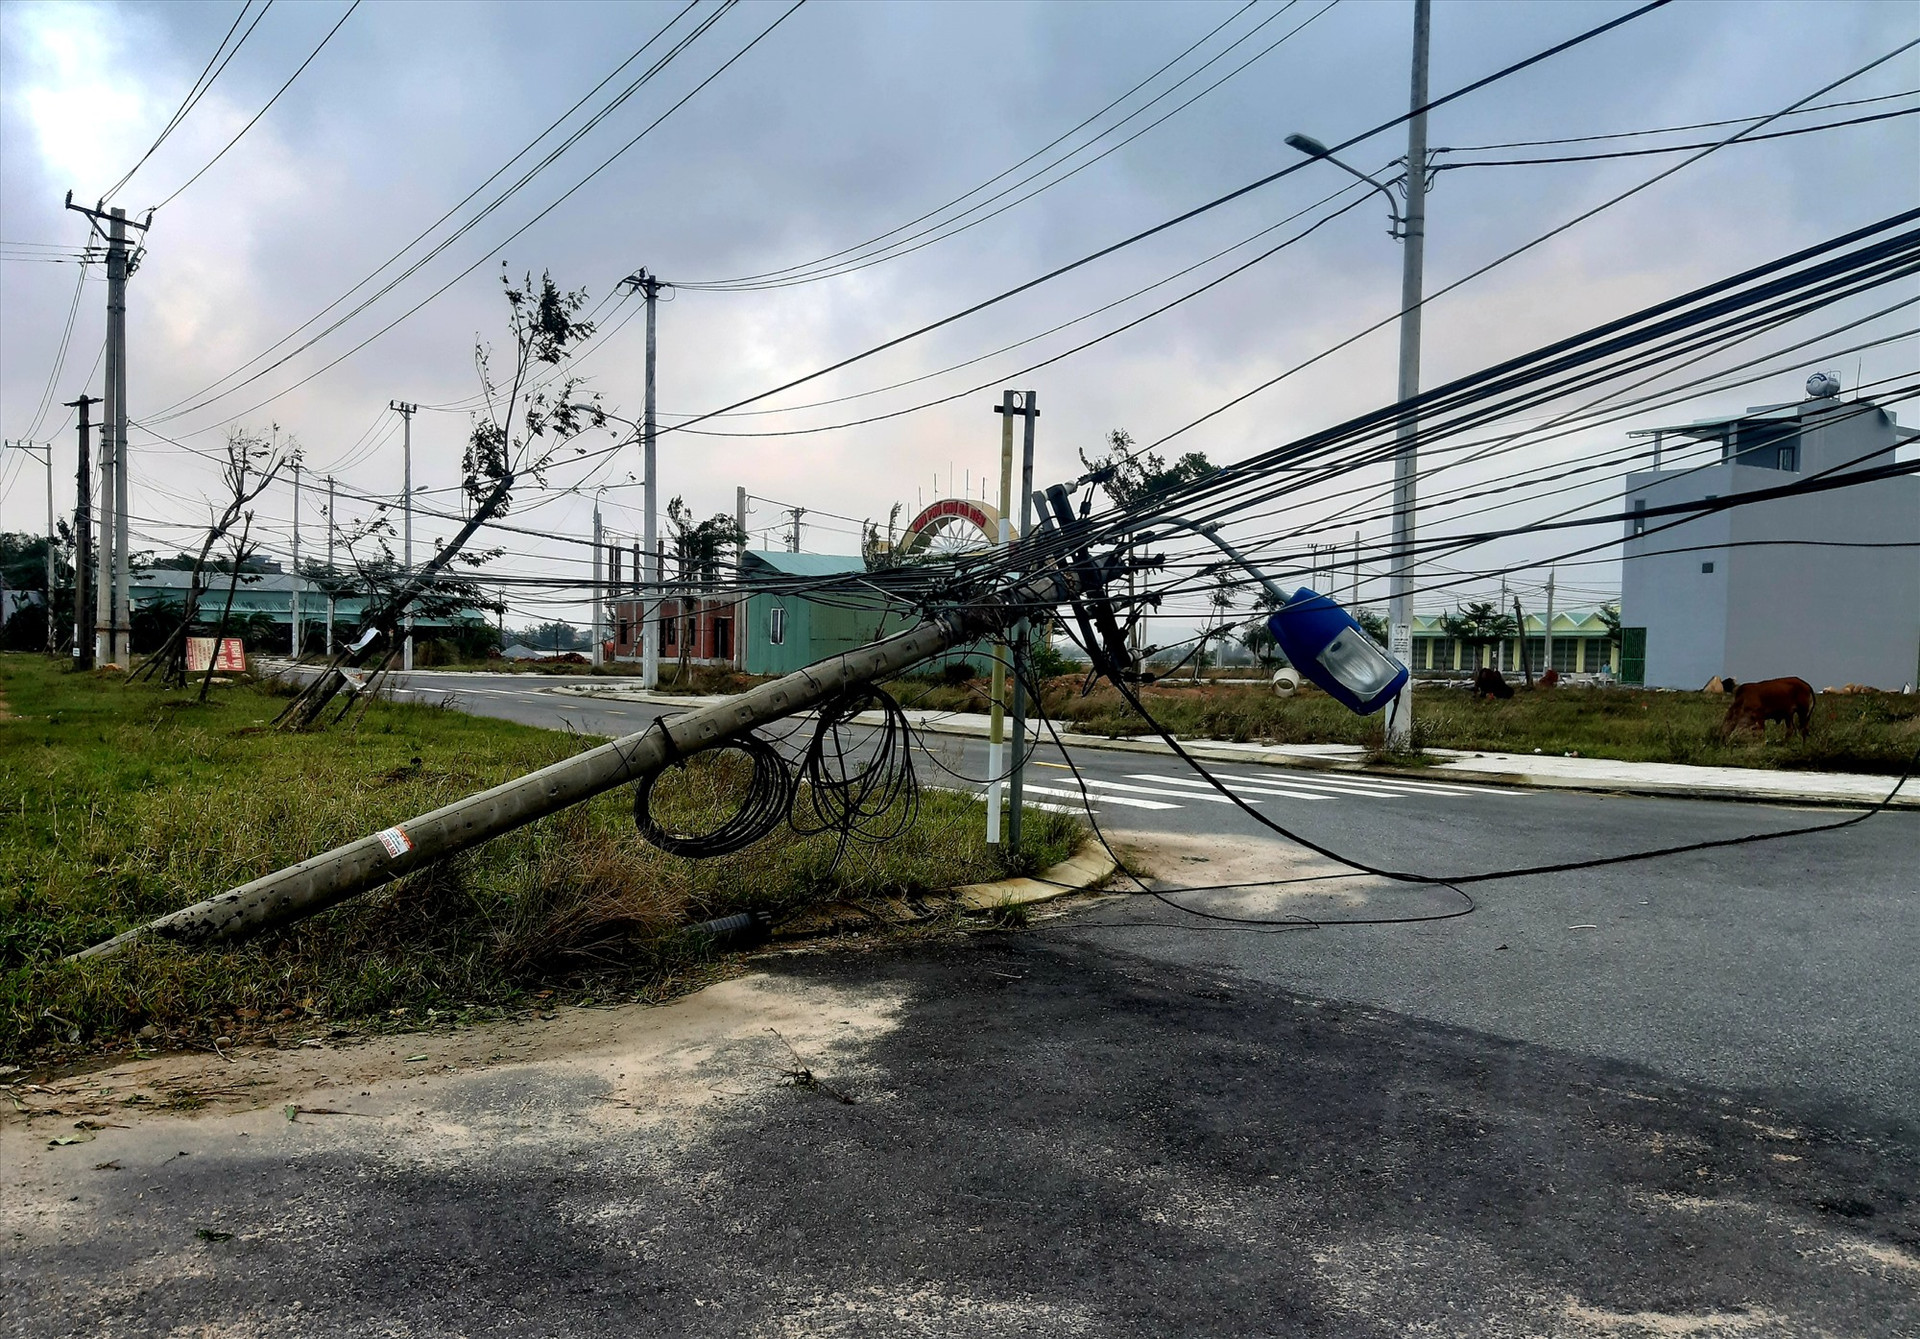 Tính đến cuối giờ chiều 29.10, hệ thống điện ở nhiều nơi của huyện Quế Sơn vẫn chưa thể khắc phục. Ảnh: S.T